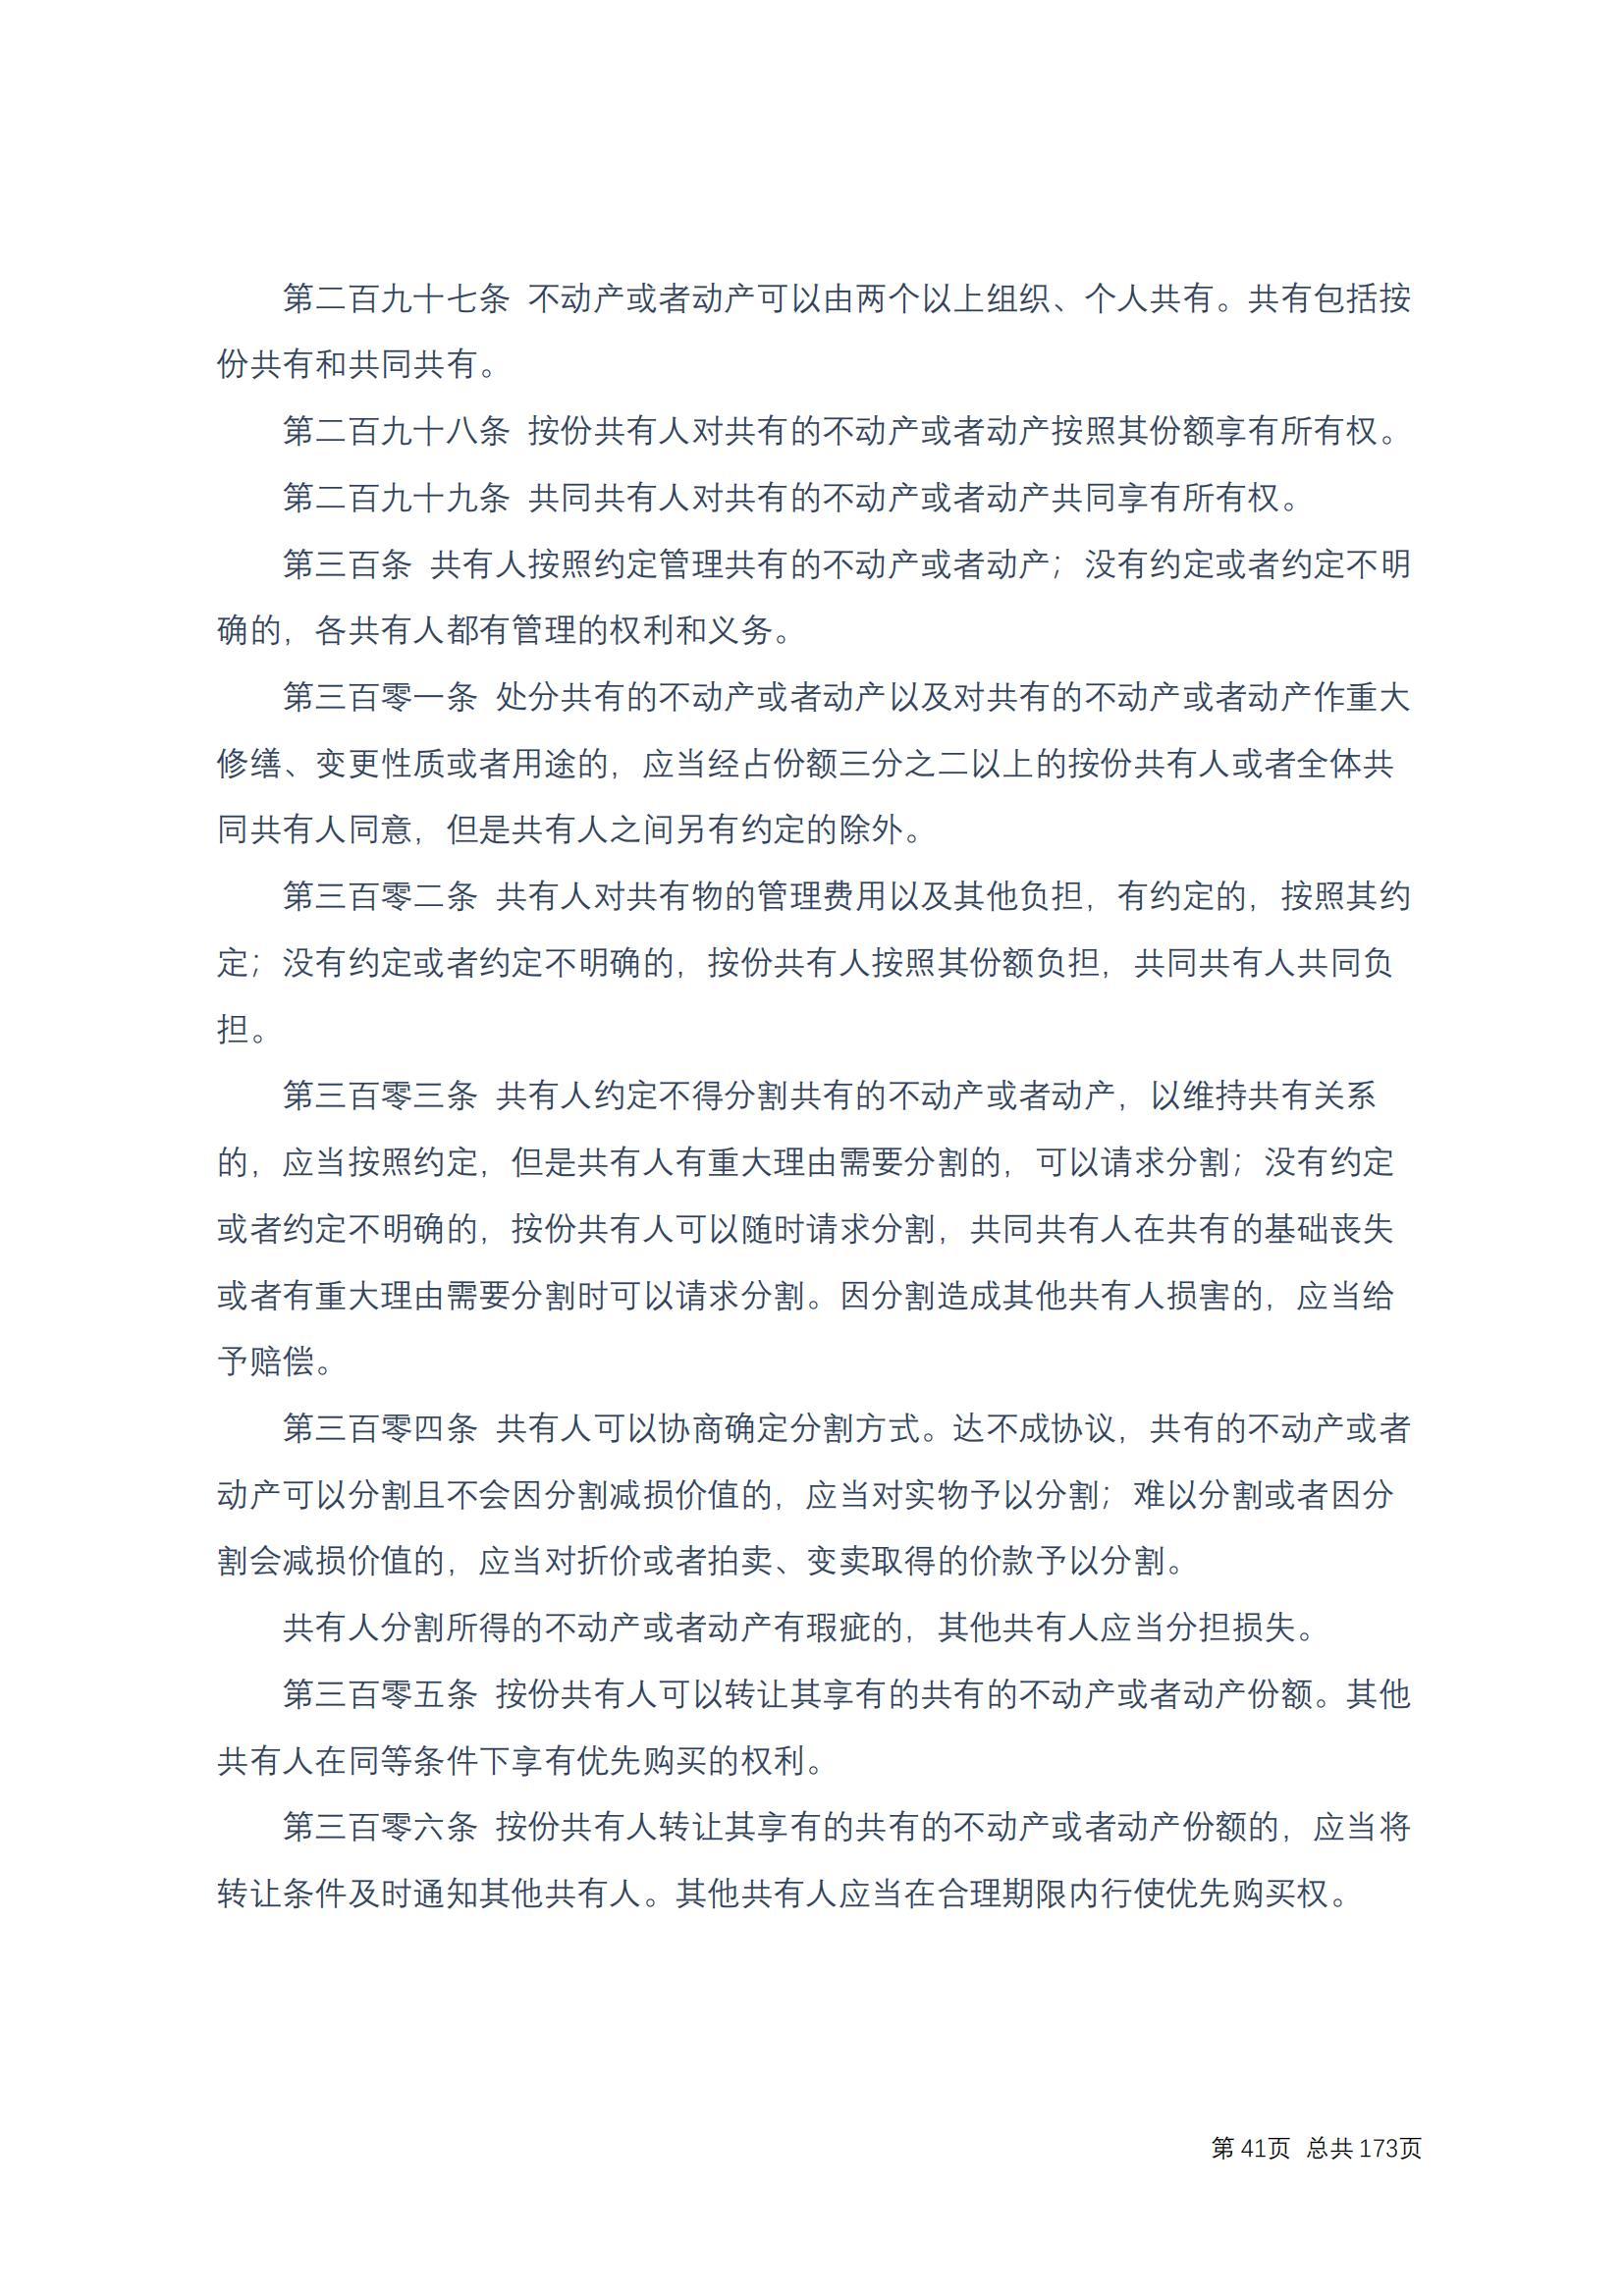 中华人民共和国民法典 修改过_40